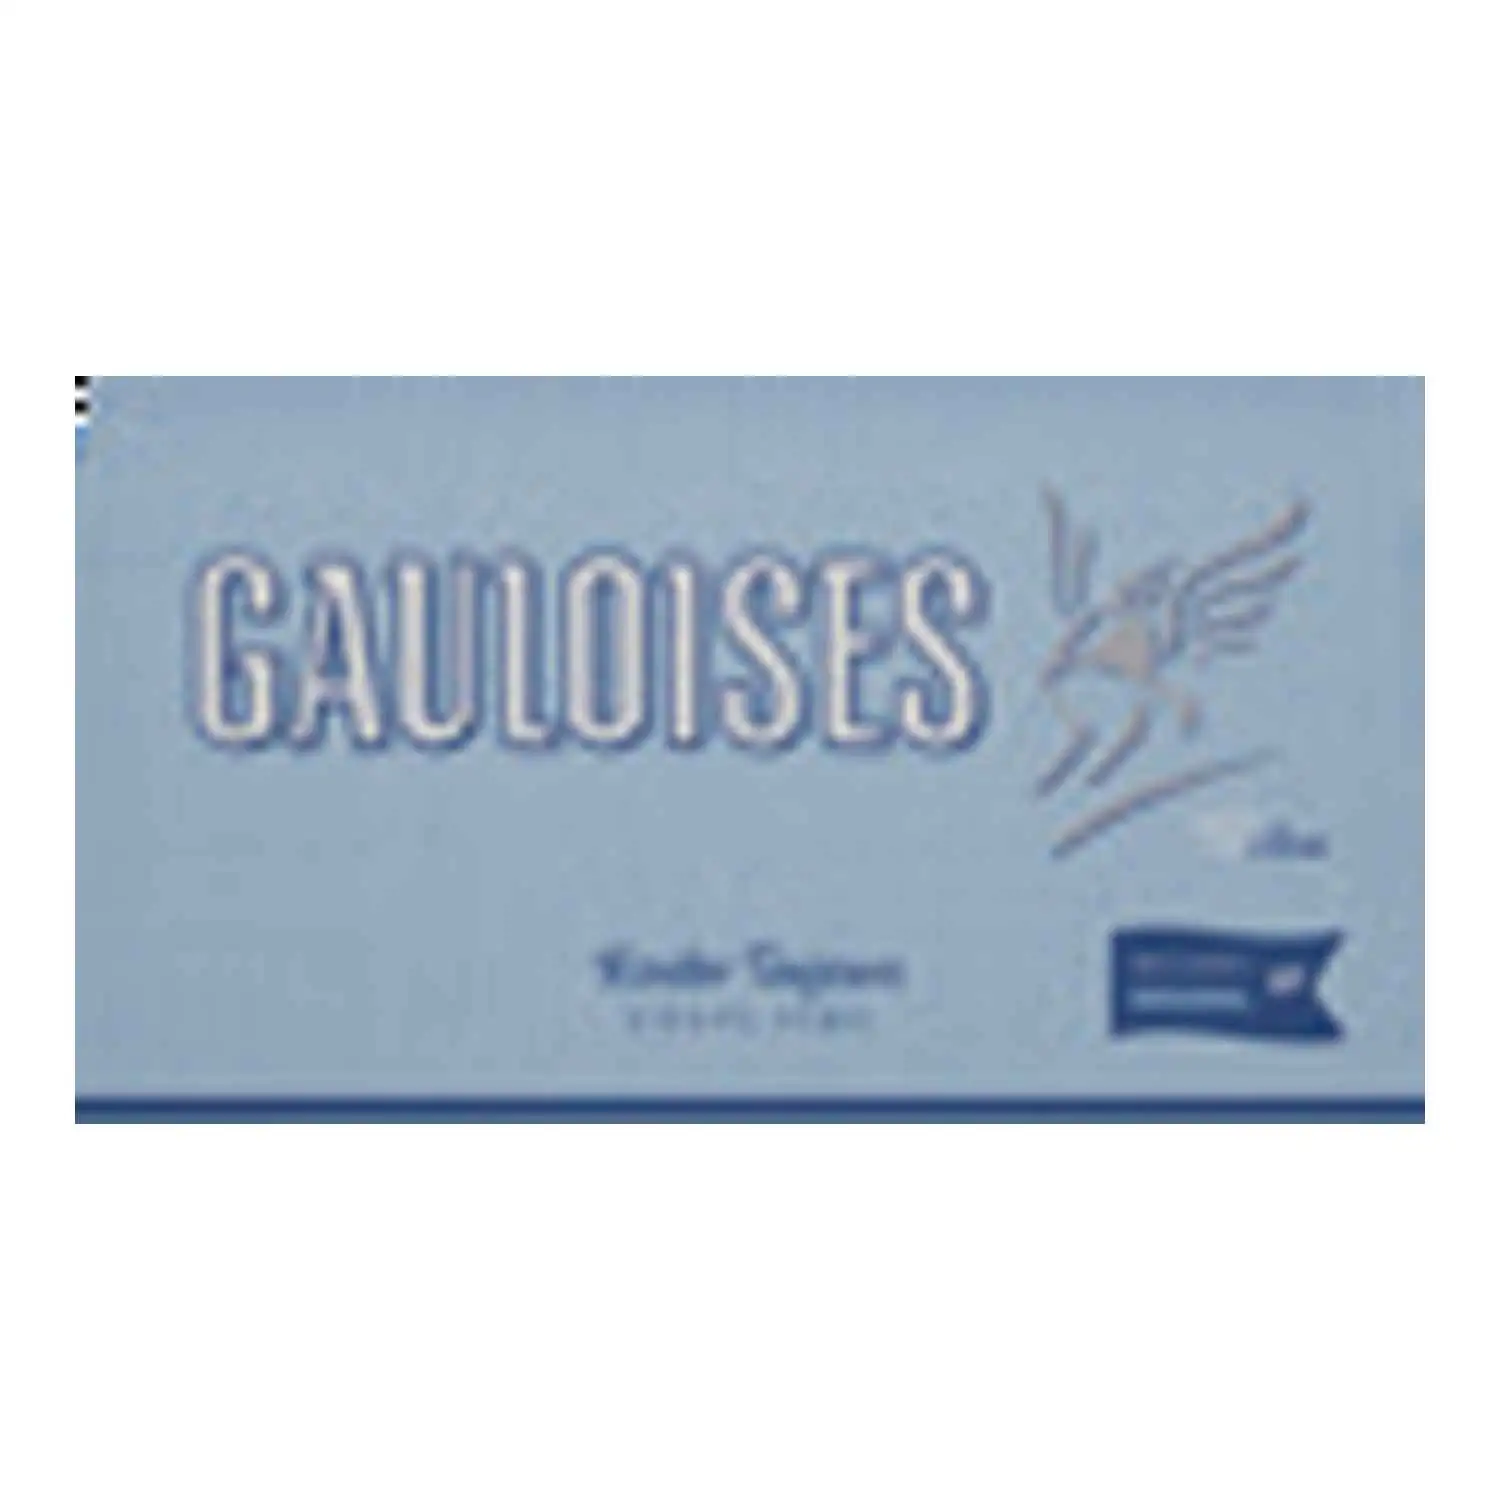 Gauloises mélange brun 50g - Buy at Real Tobacco